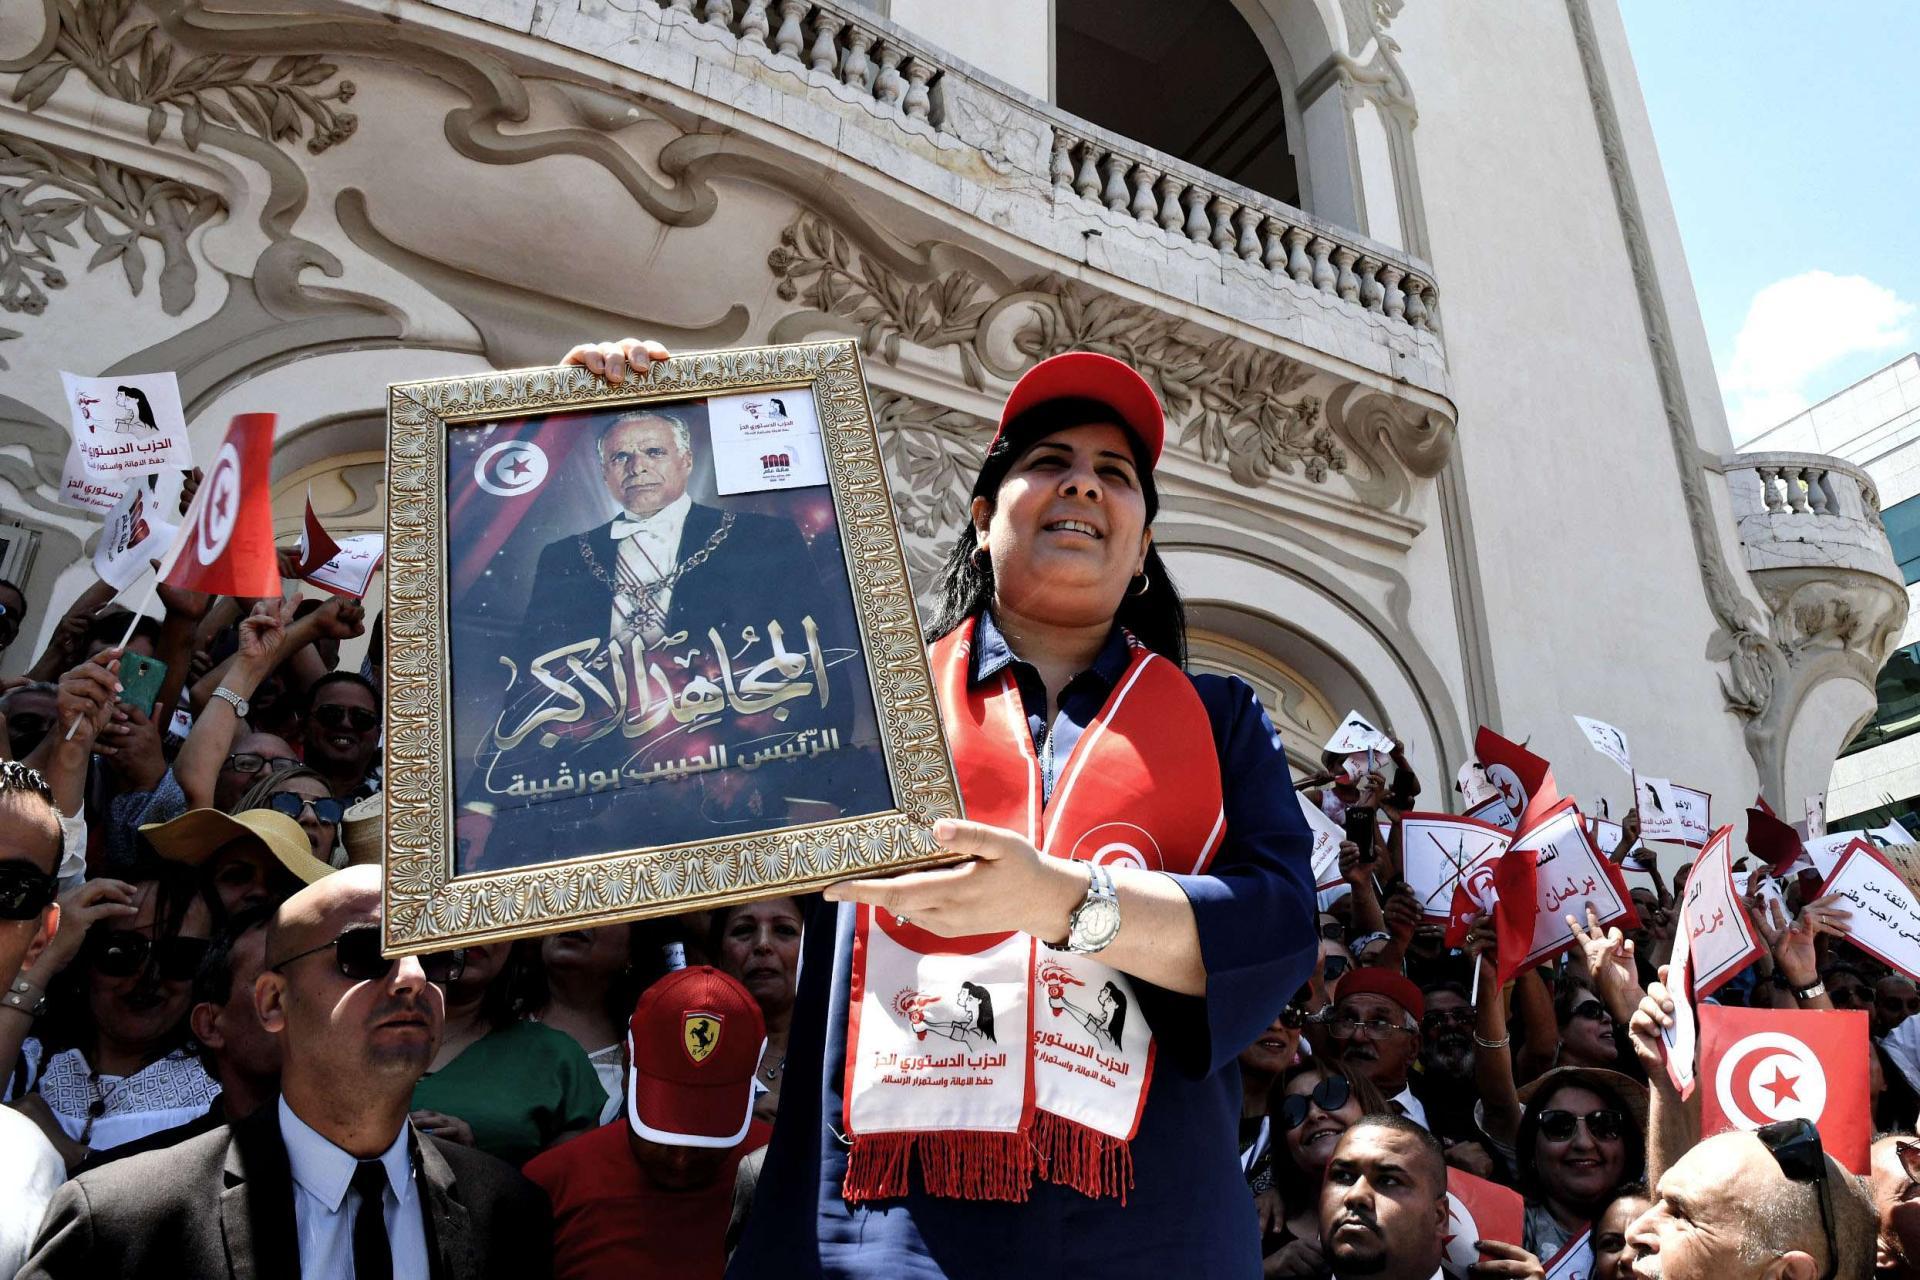 عبير موسي اصبحت ورقة صعبة يحسب لها الف حساب في المعادلة السياسية التونسية